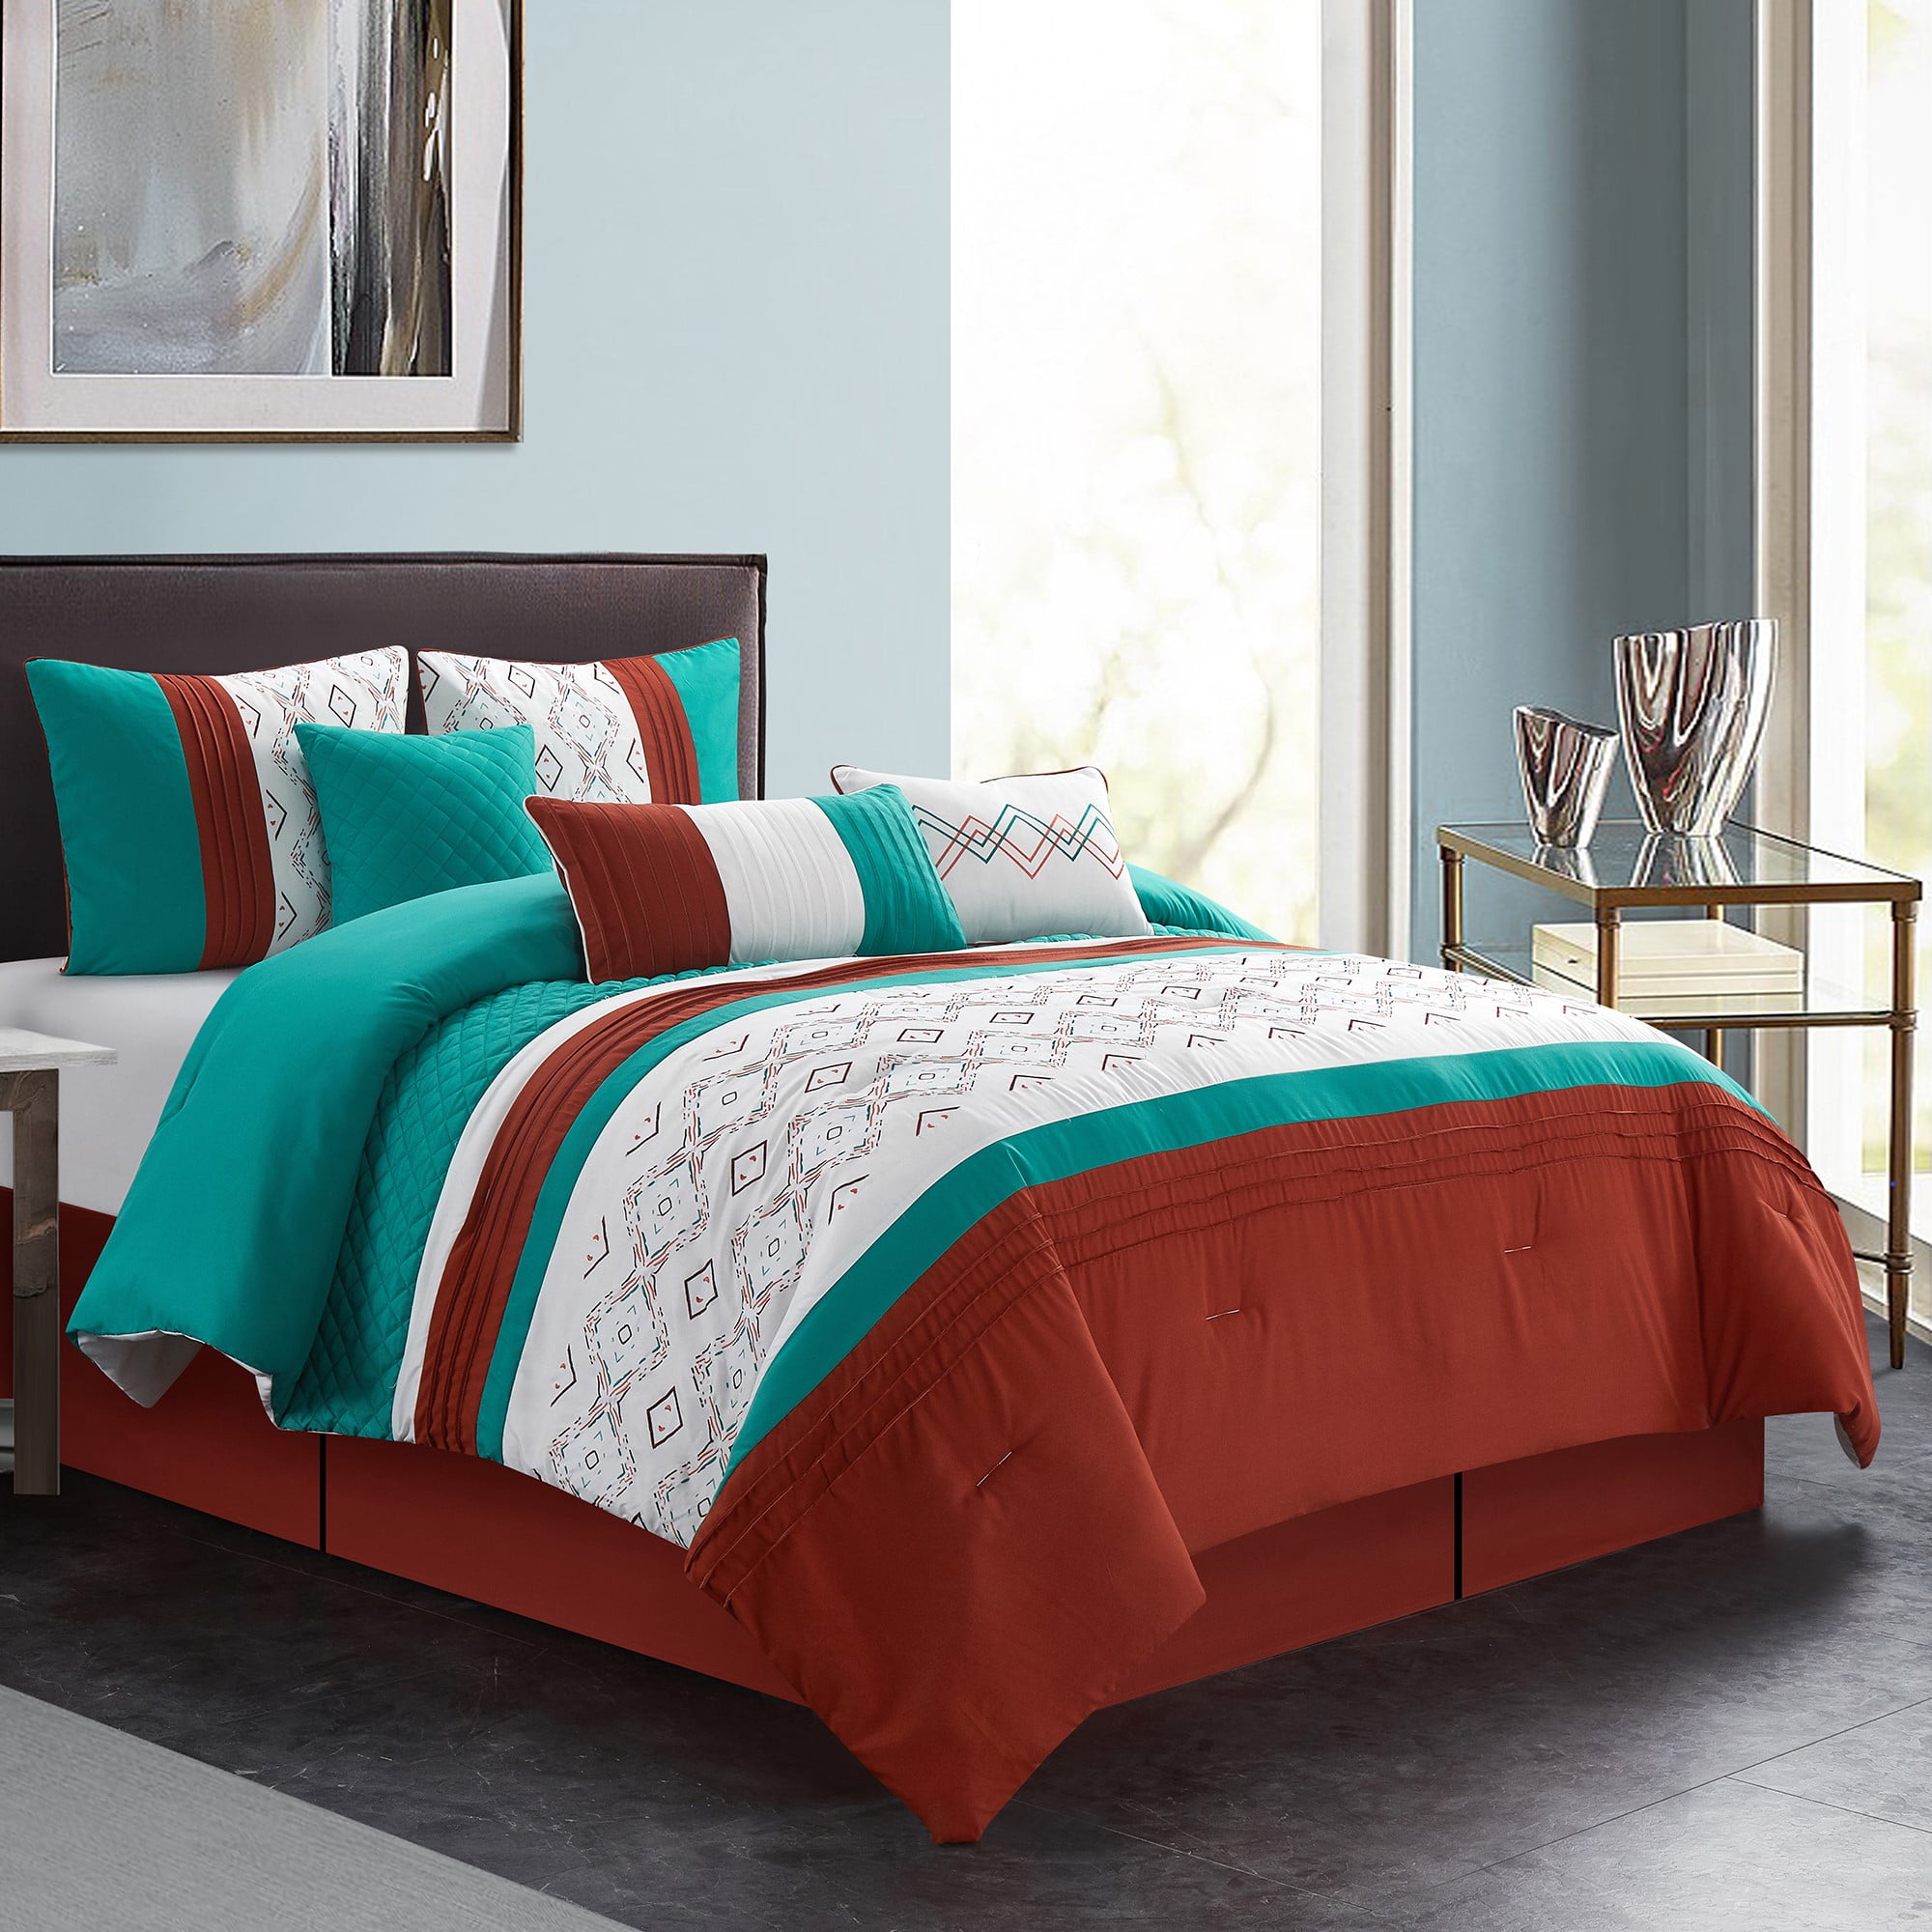 7 Piece Bedding Comforter Set Luxury Bed In A Bag, Queen 